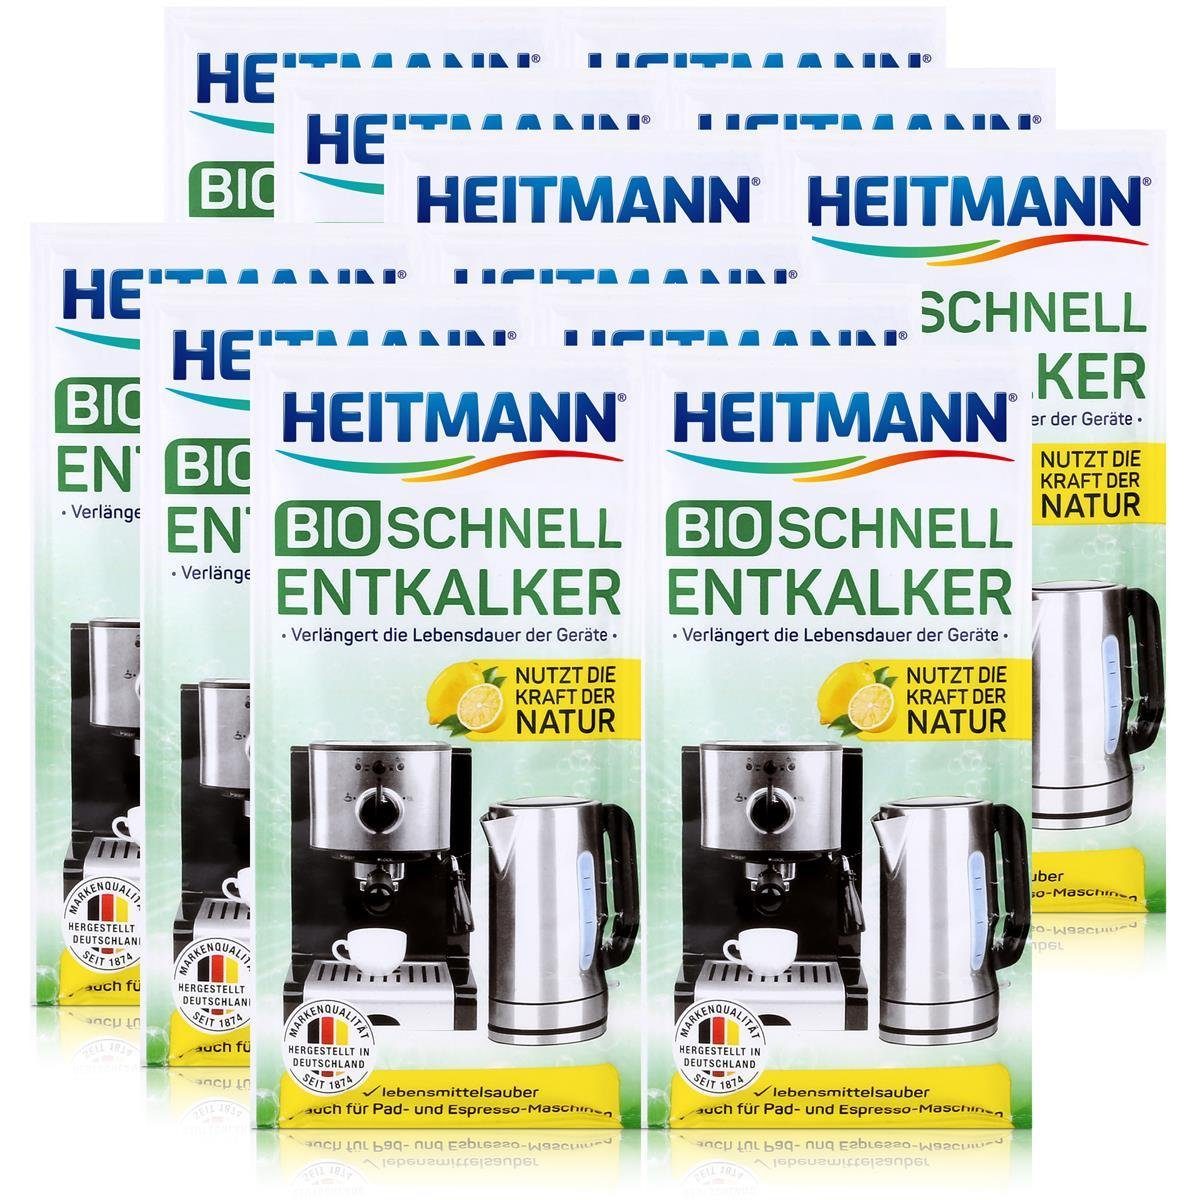 HEITMANN Heitmann Bio Schnell-Entkalker 2x25g - Natürlicher Universalentkalker Entkalker